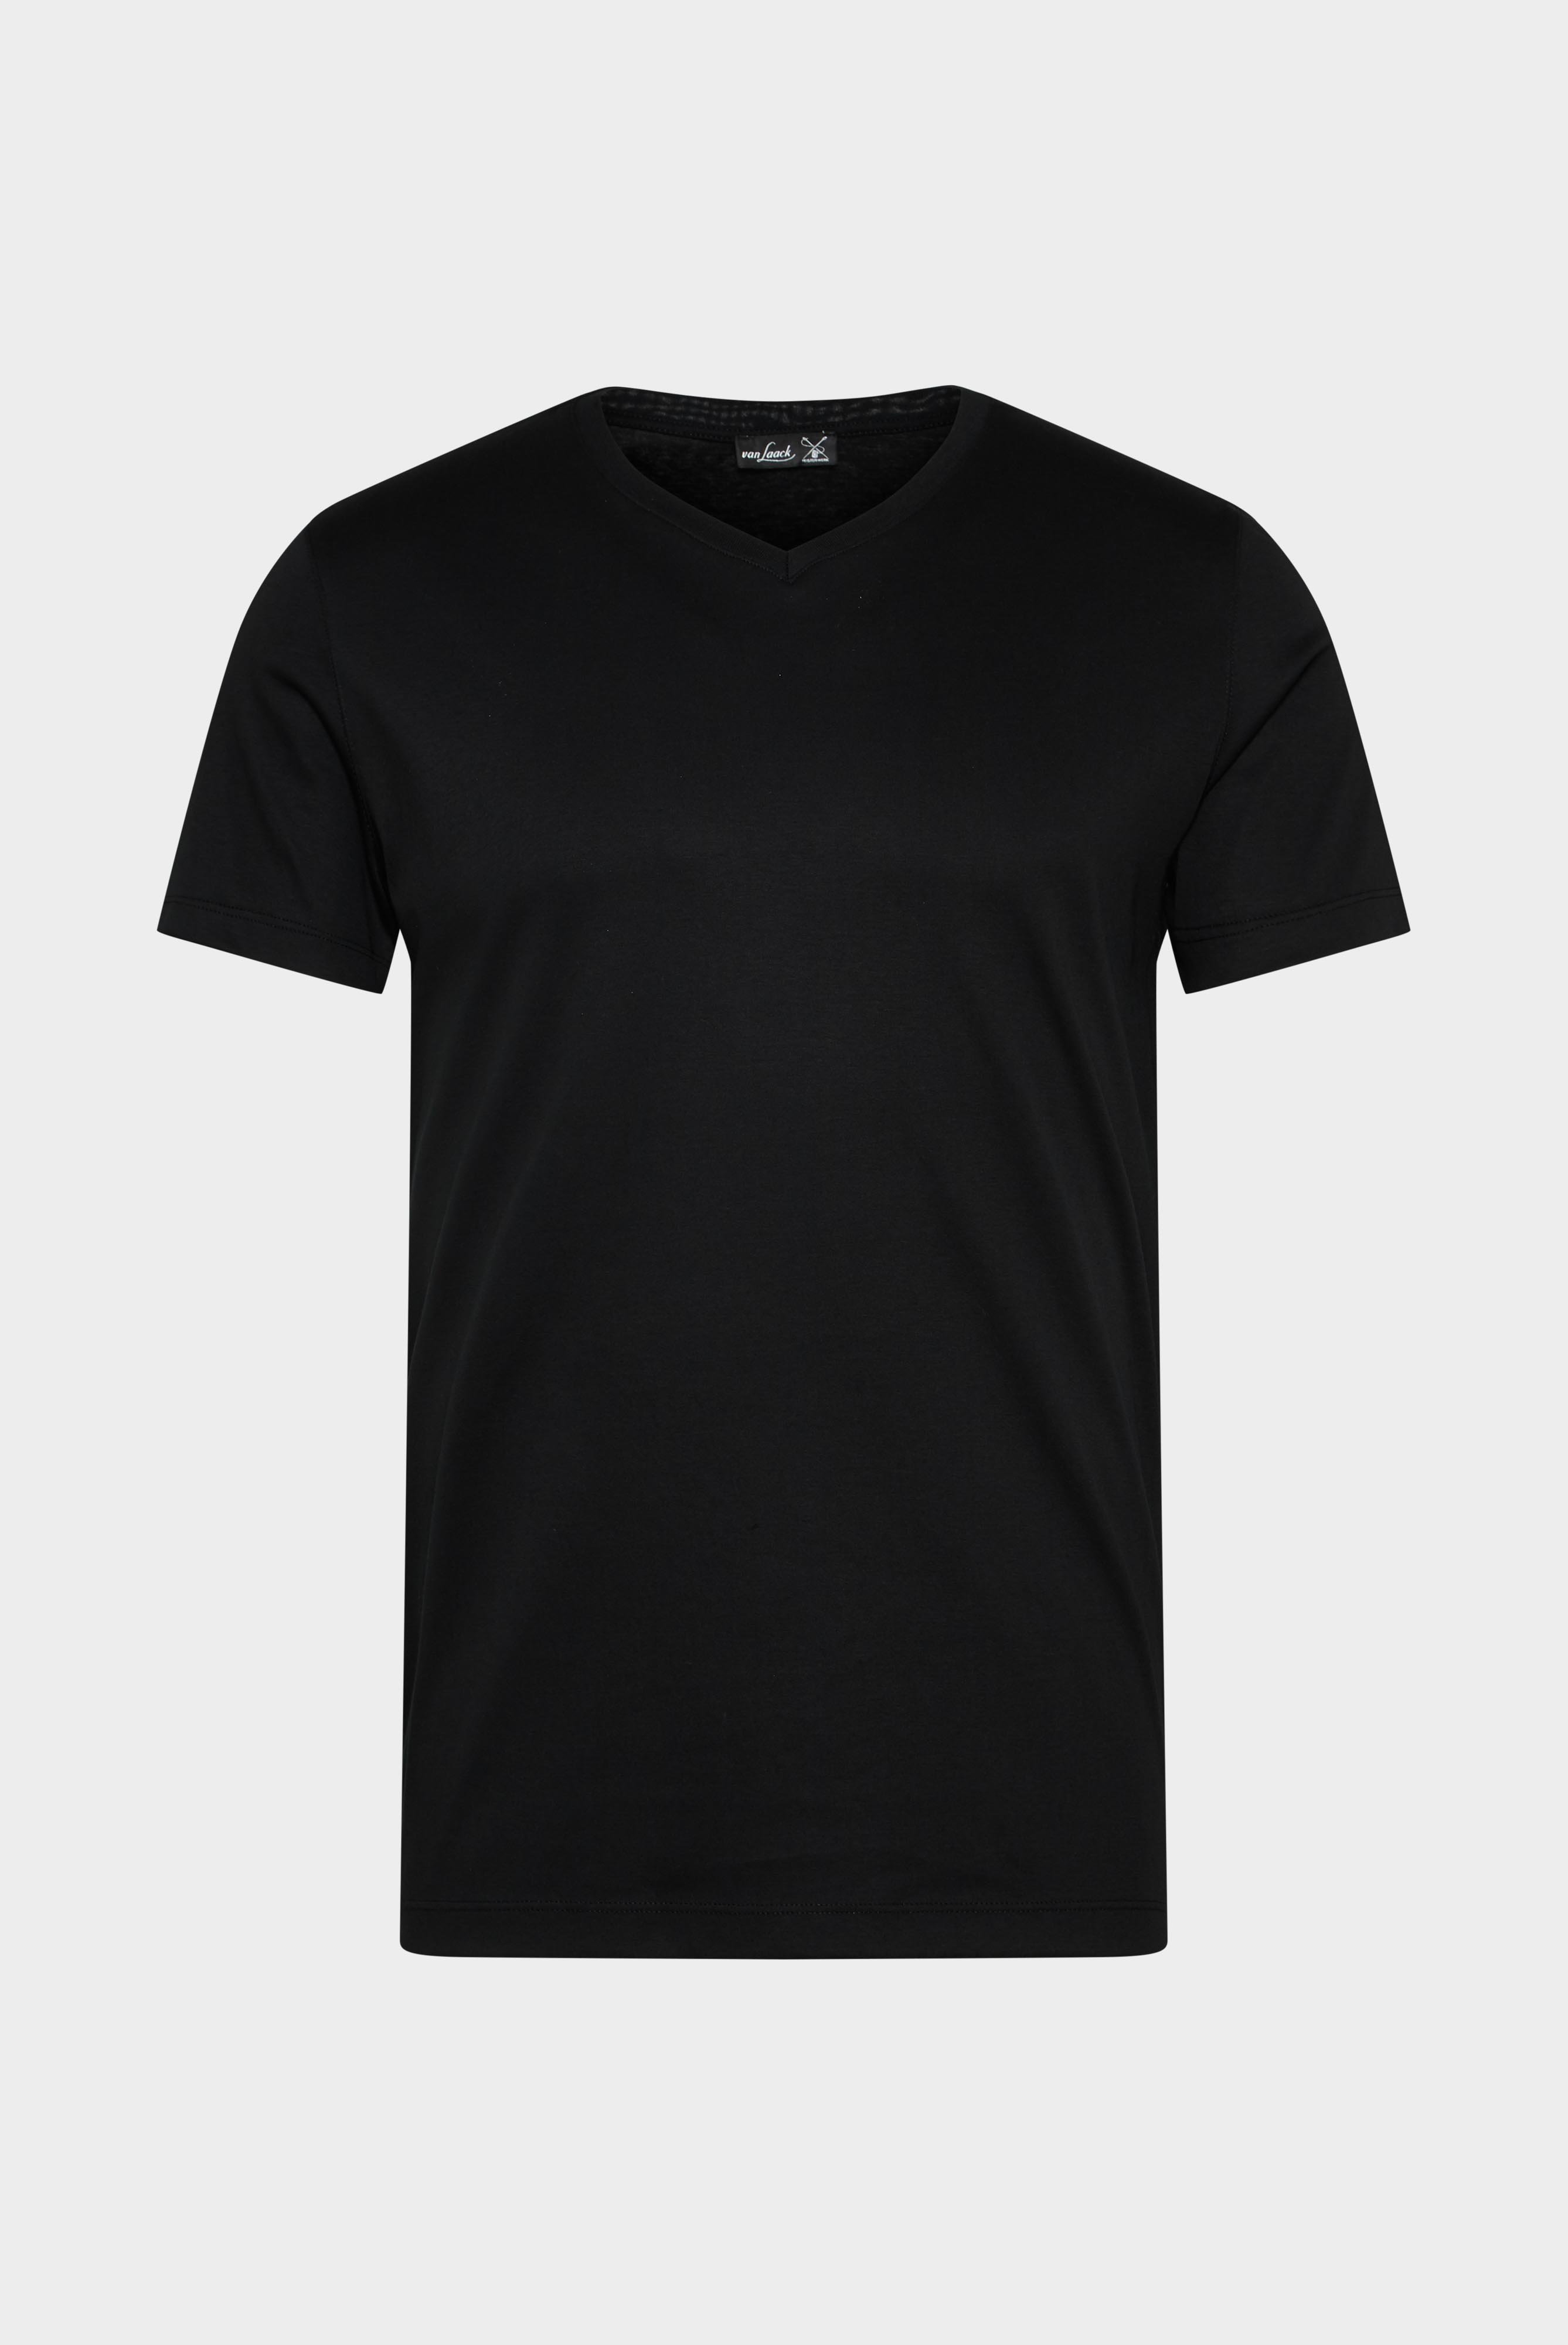 T-Shirts+V-Ausschnitt Jersey T-Shirt Slim Fit+20.1715.UX.180031.099.XL